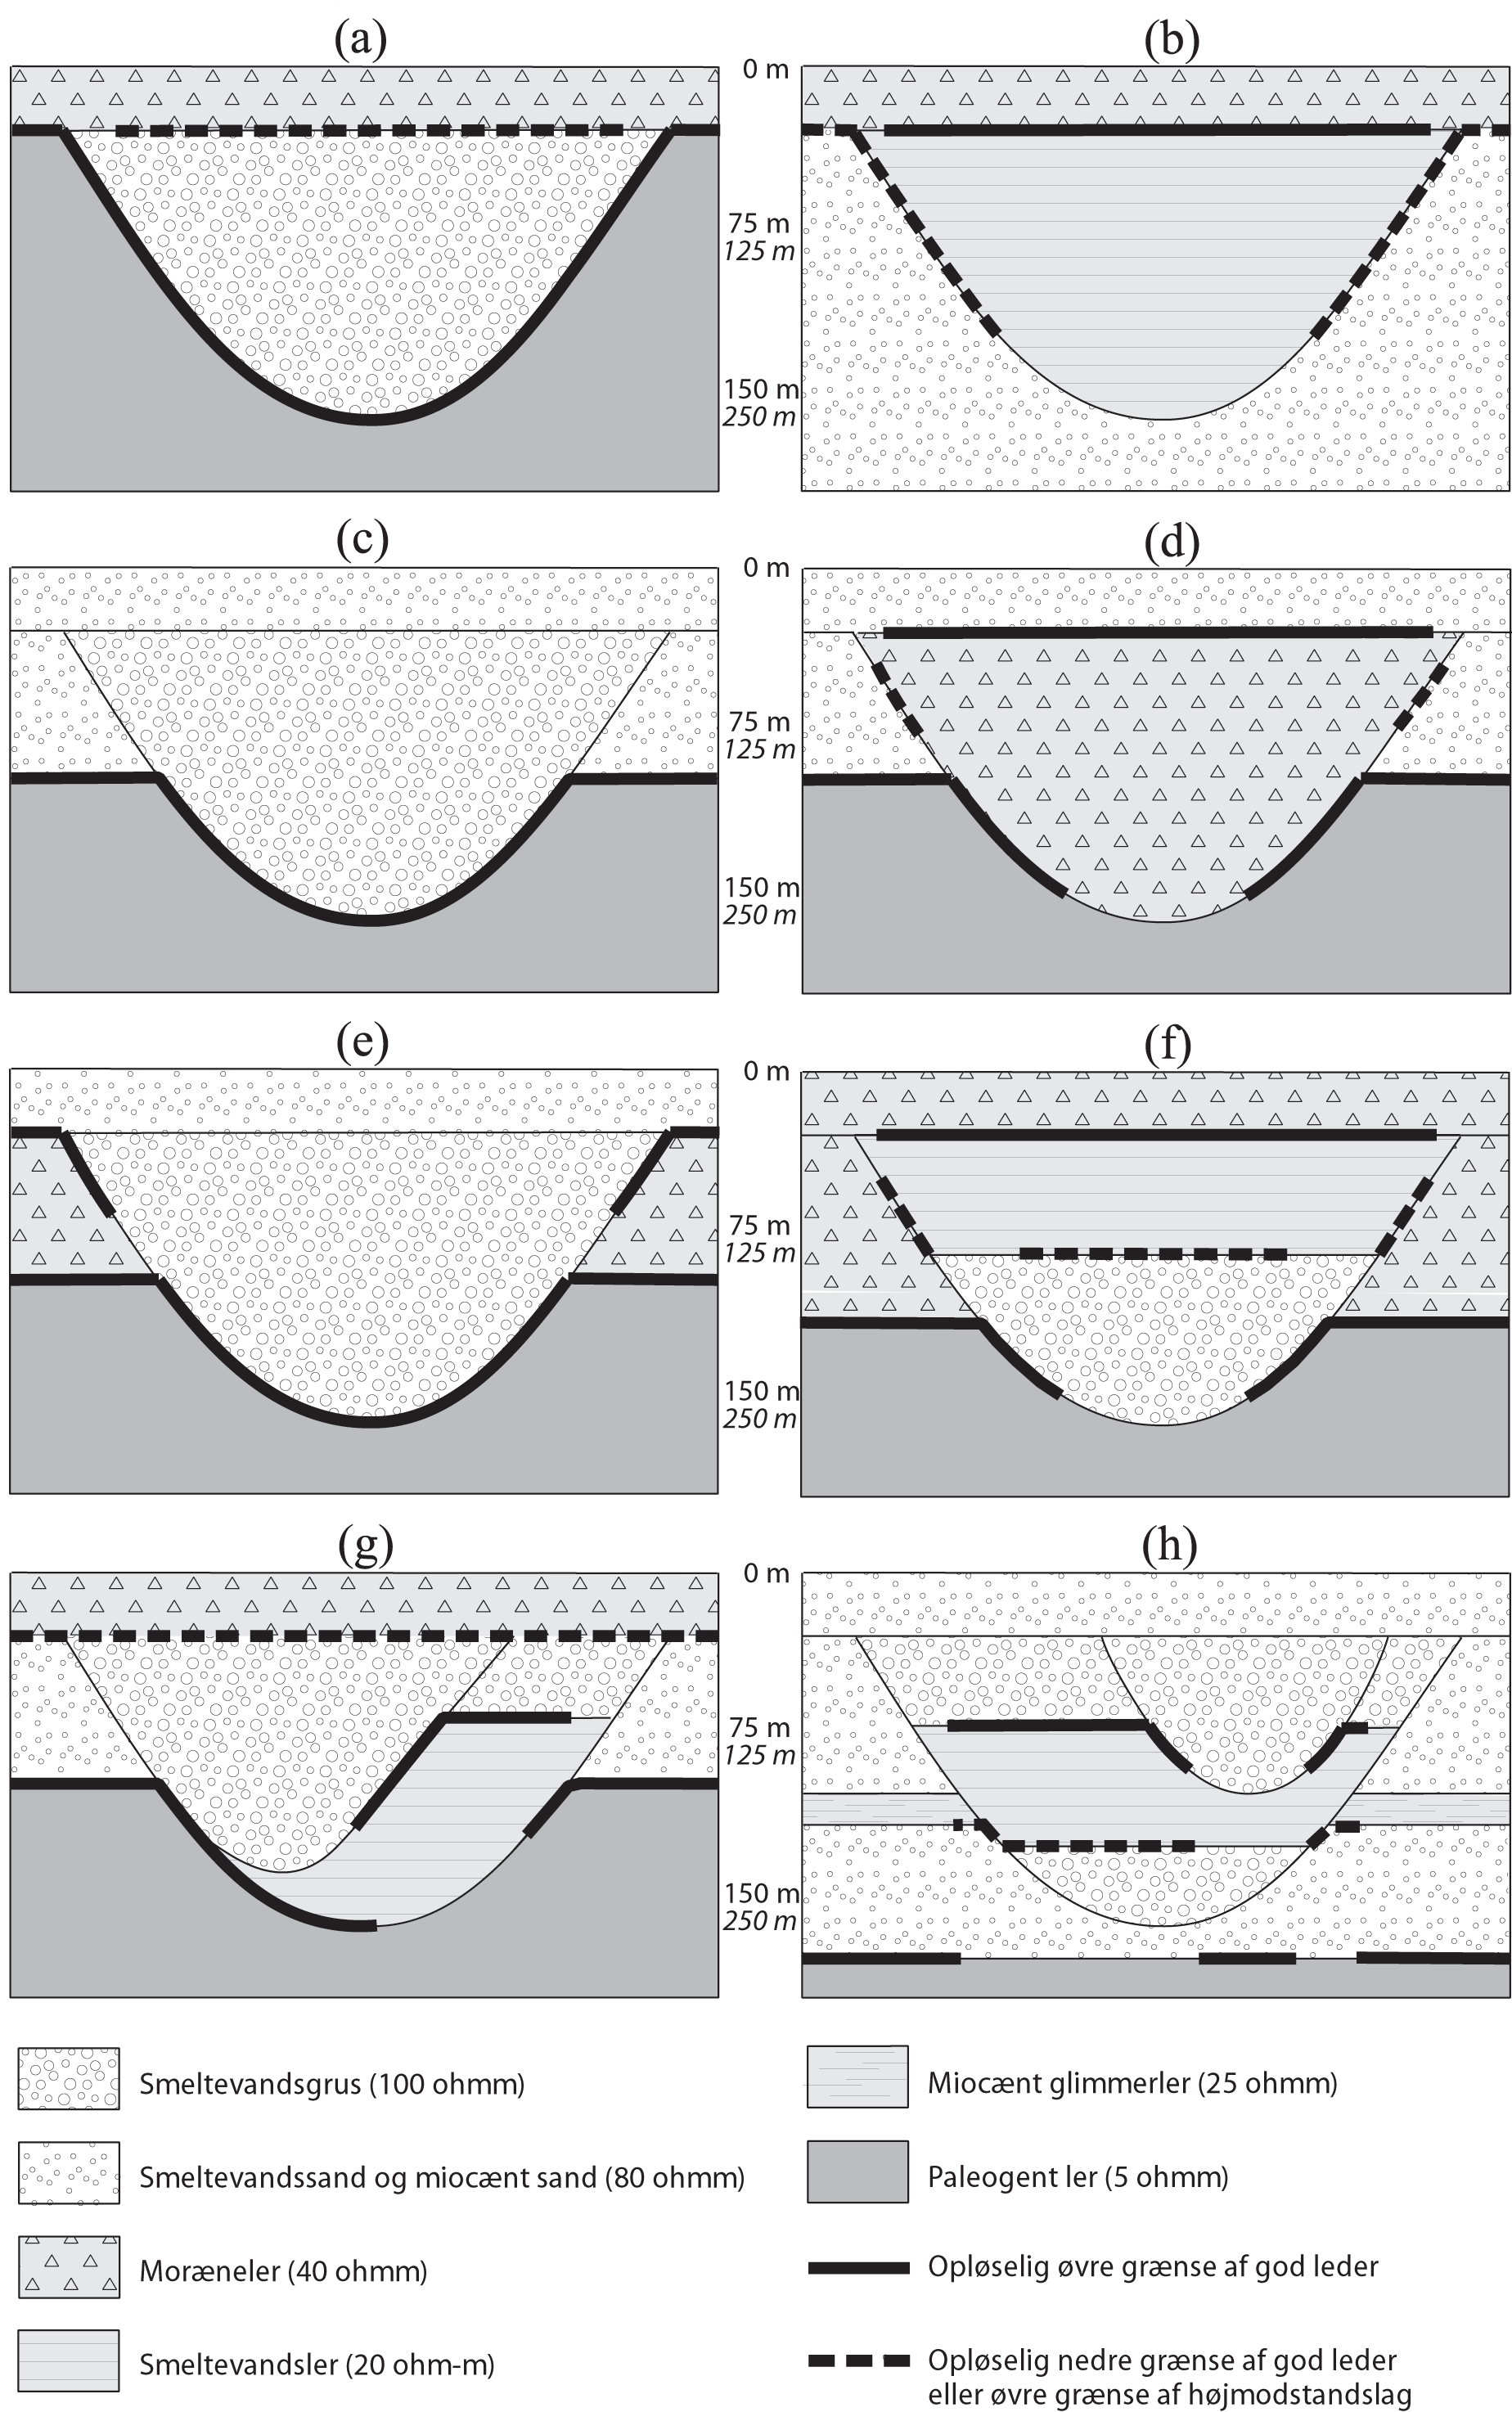 Figur 4.1 Tværsnit af begravede dale.